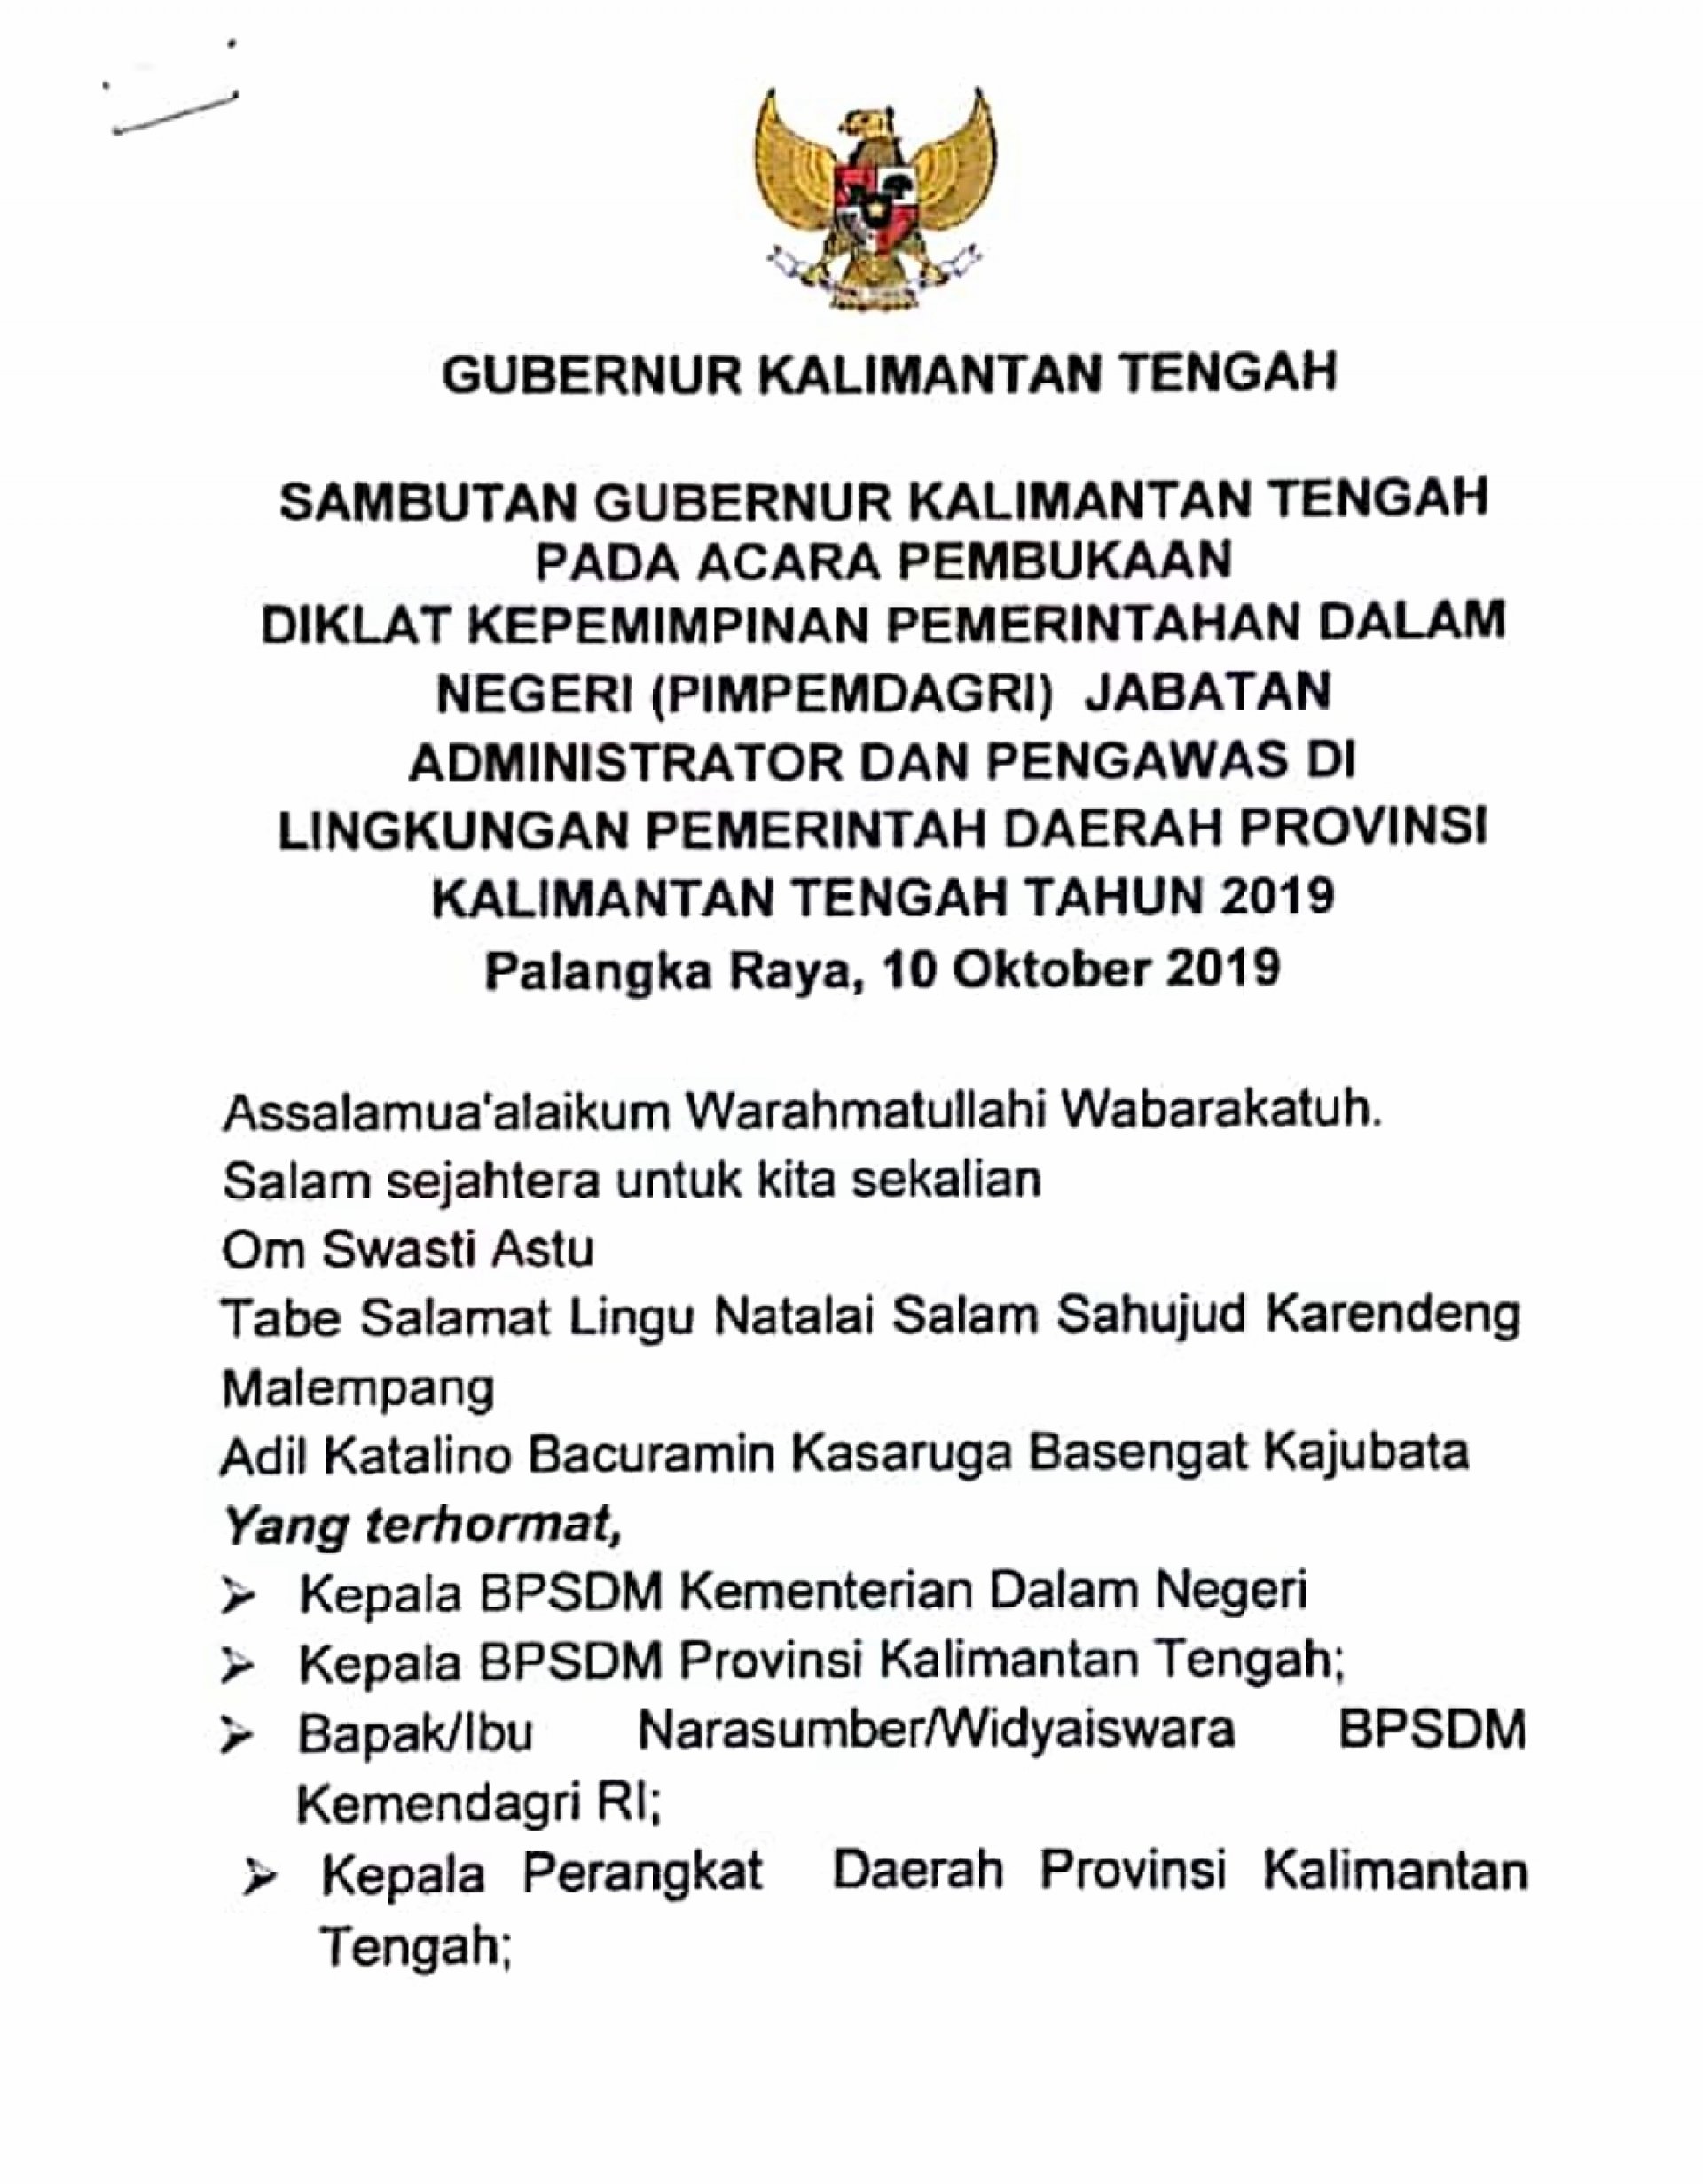 Sambutan Gubernur Kalimantan Tengah pada acara Pembukaan Diklat Kepemimpinan Pemerintahan Dalam Negeri Jabatan Administrator dan Pengawas Tahun 2019